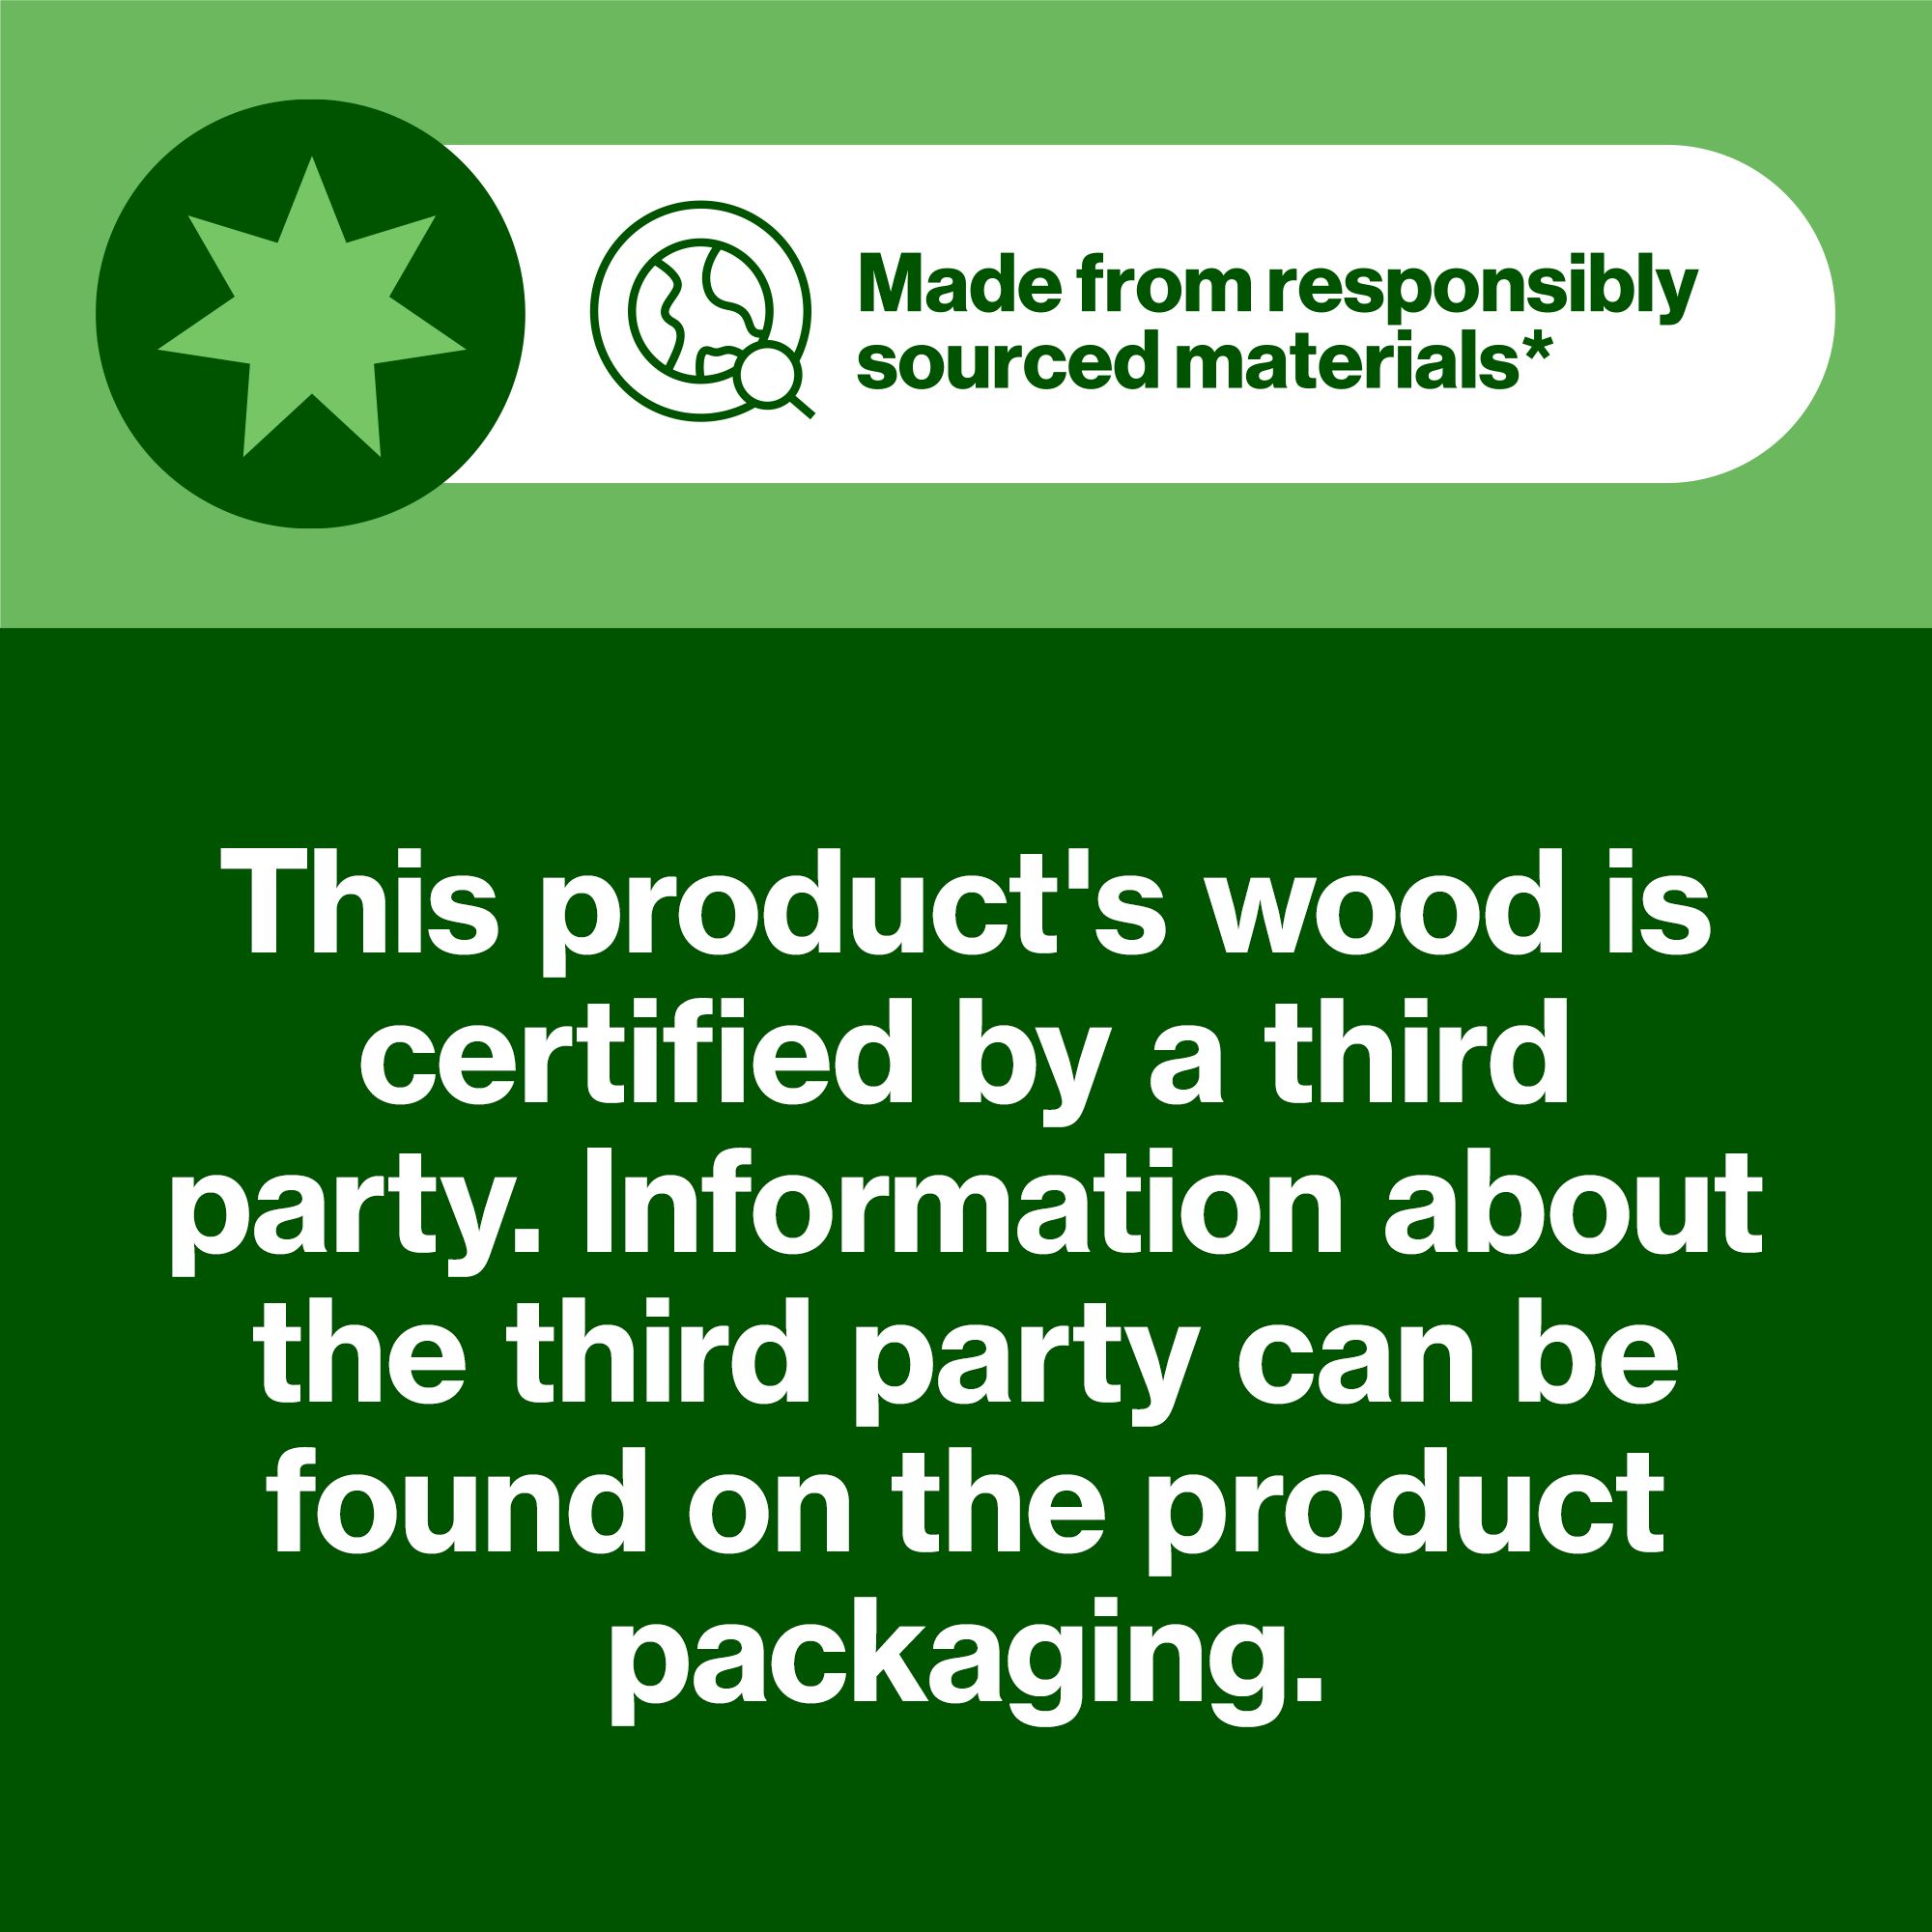 Hardwood Plywood (L)2.44m (W)1.22m (T)18mm